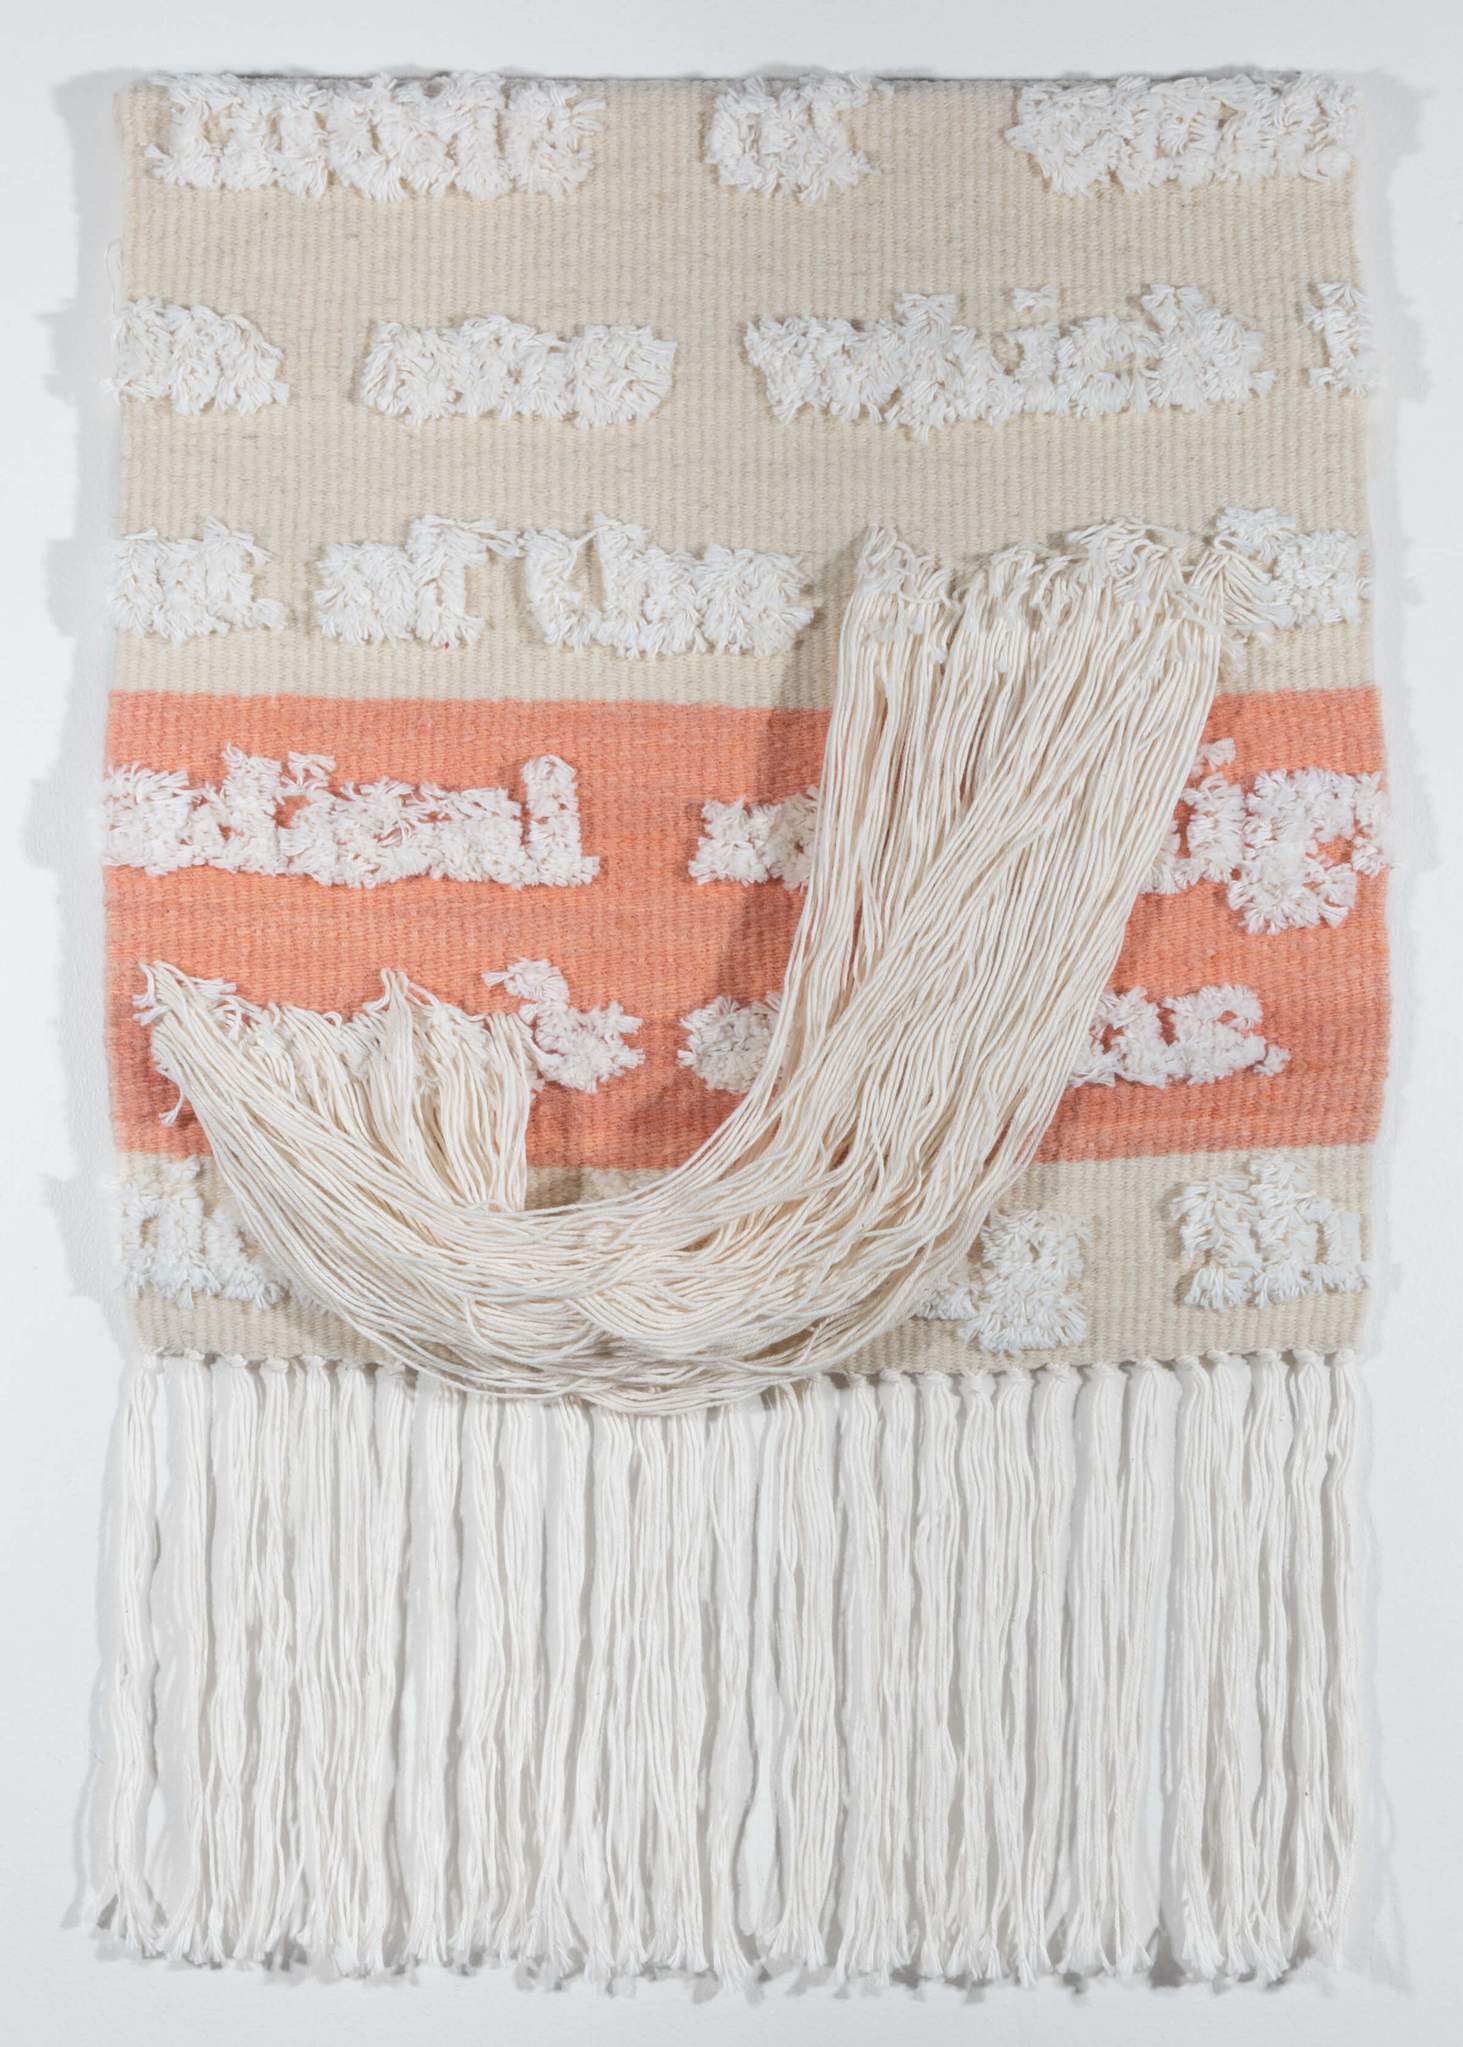 Contemporary handwoven textile art